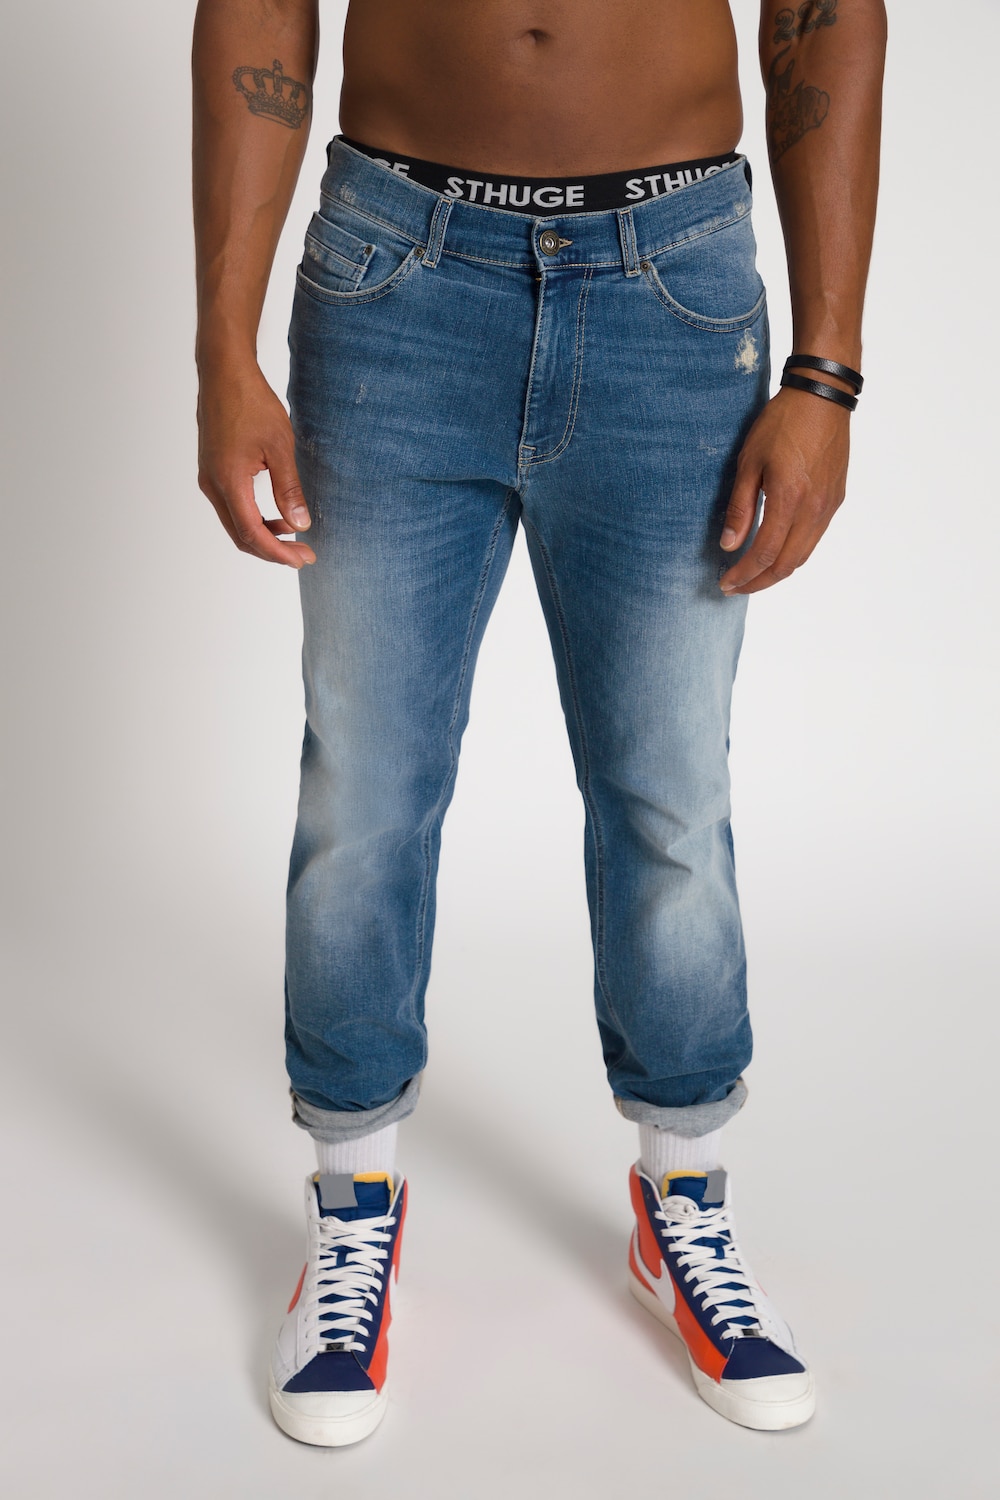 Grote Maten STHUGE jeans FLEXLASTIC®male, blauw, Maat: 54, Katoen, STHUGE